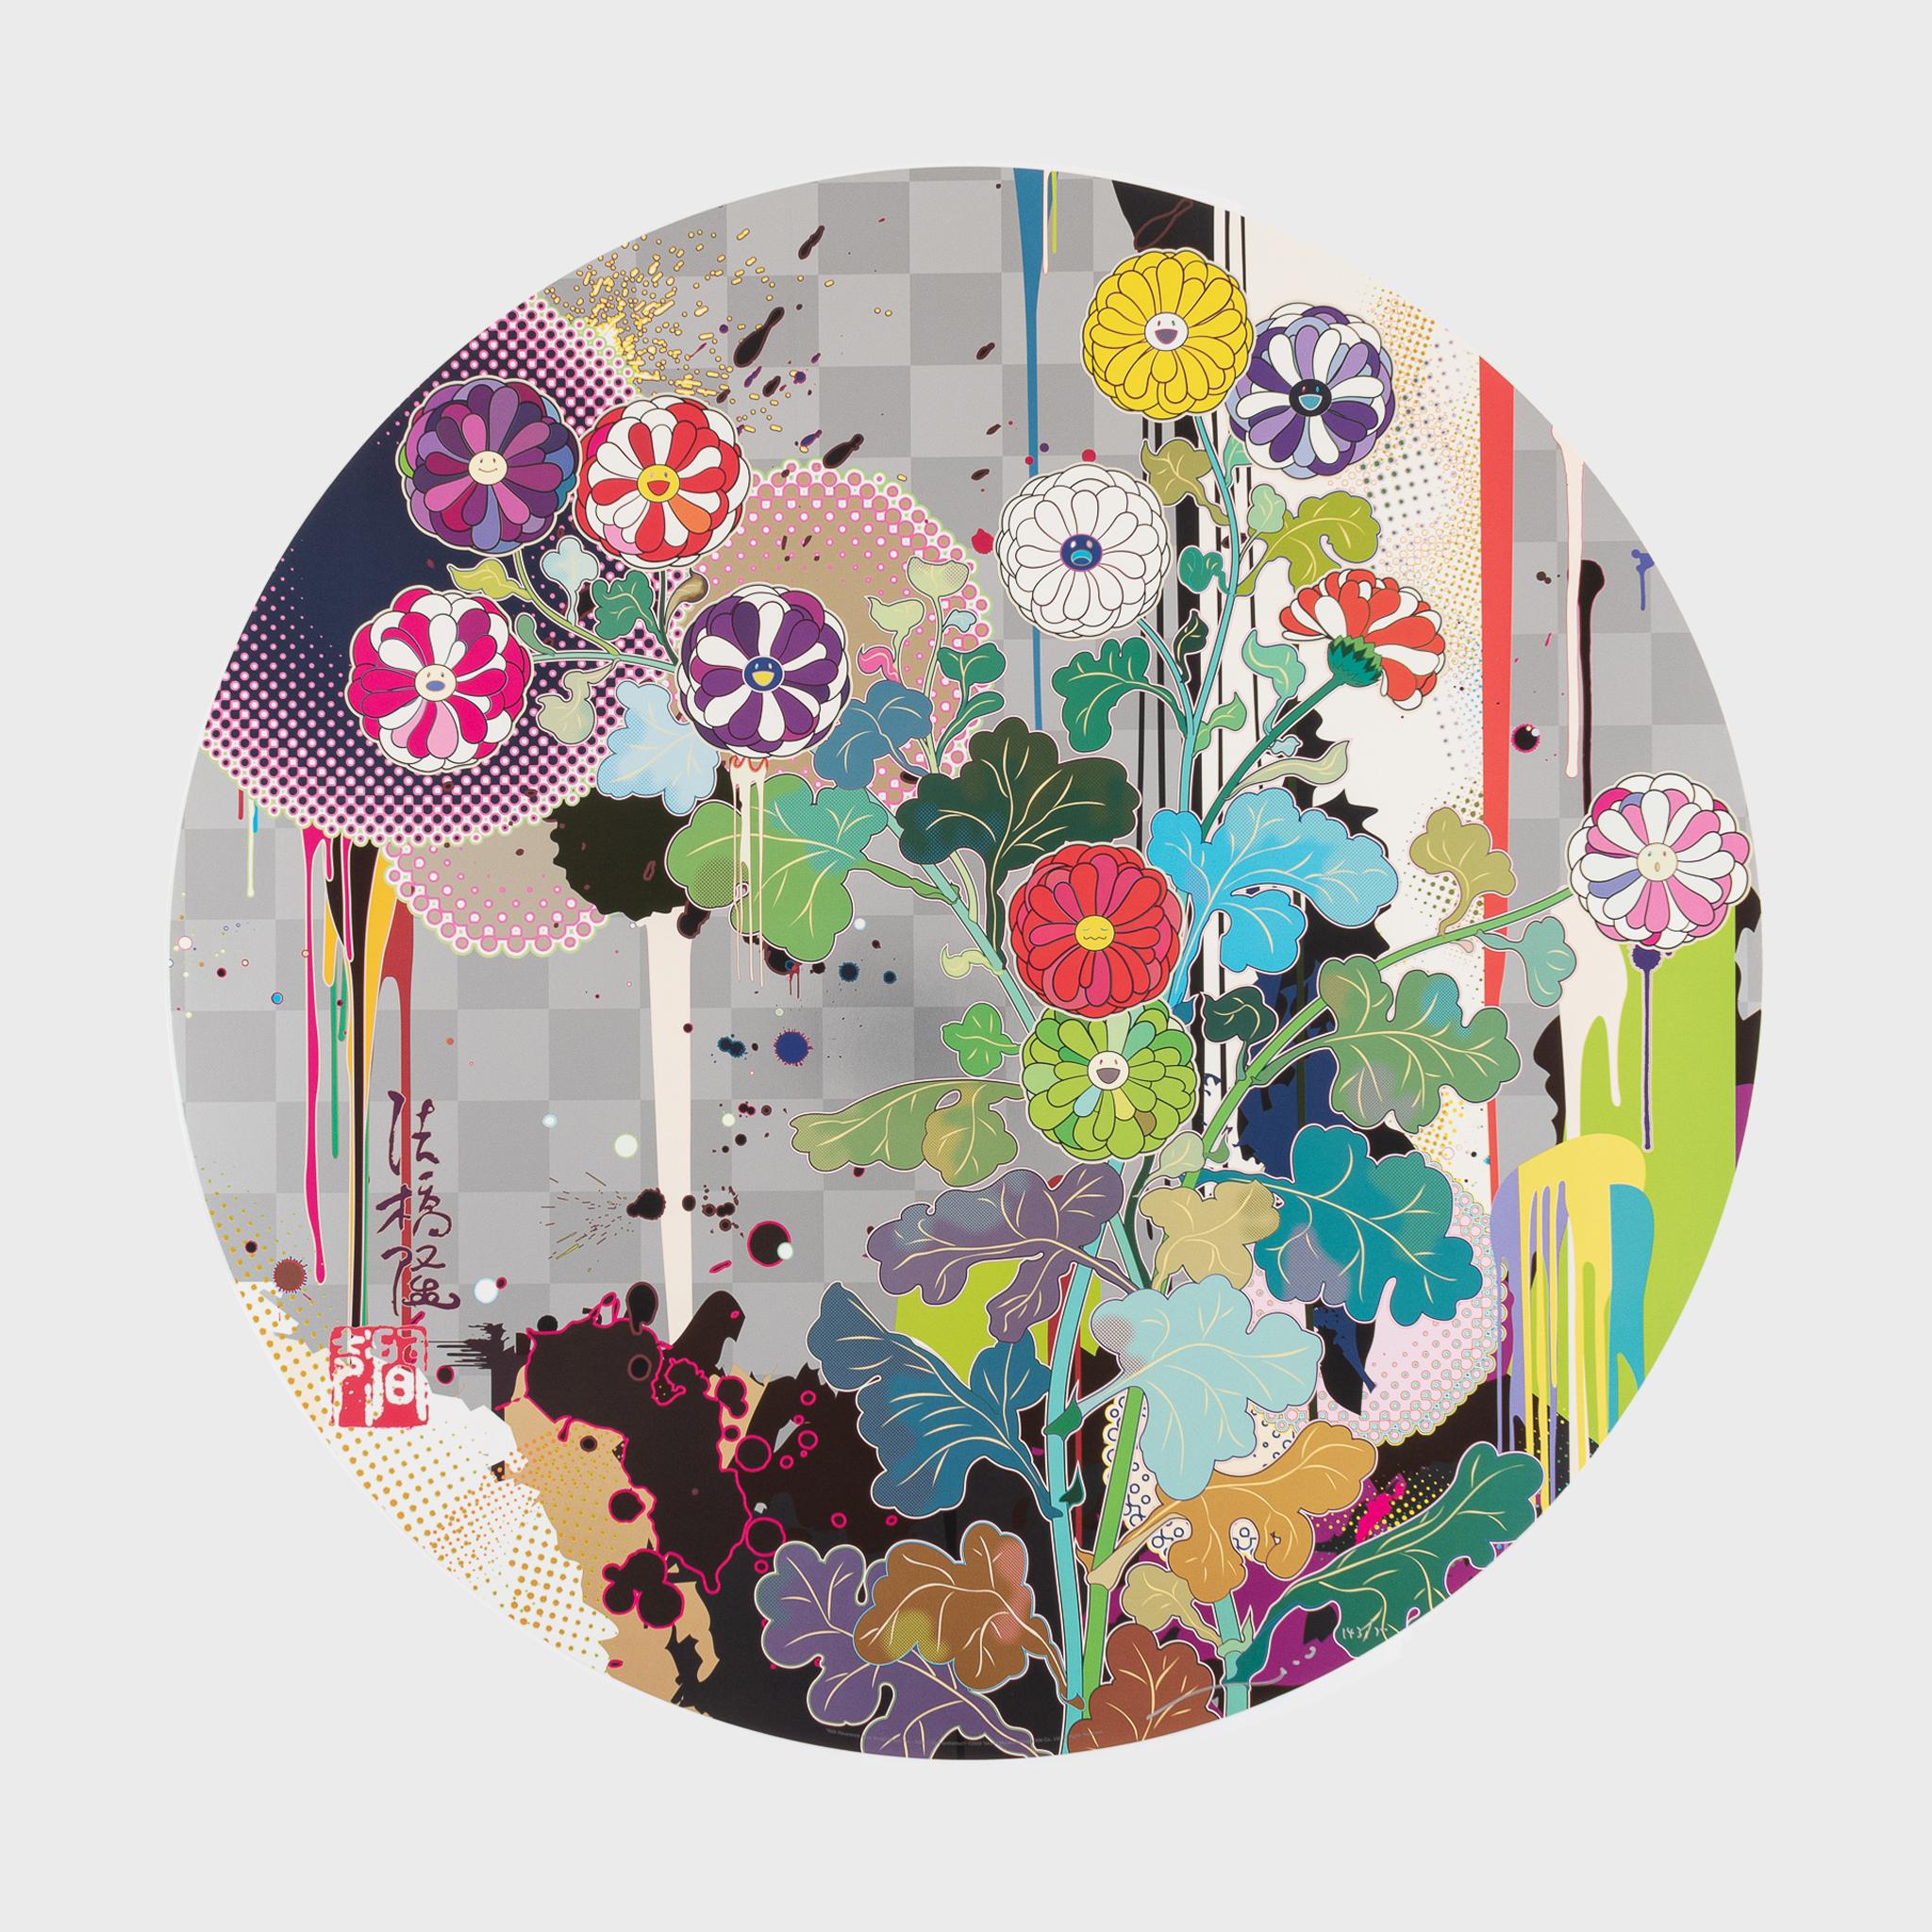 Takashi Murakami Abstract Print – Mit Ehrfurcht, ich lege mich vor dich hin